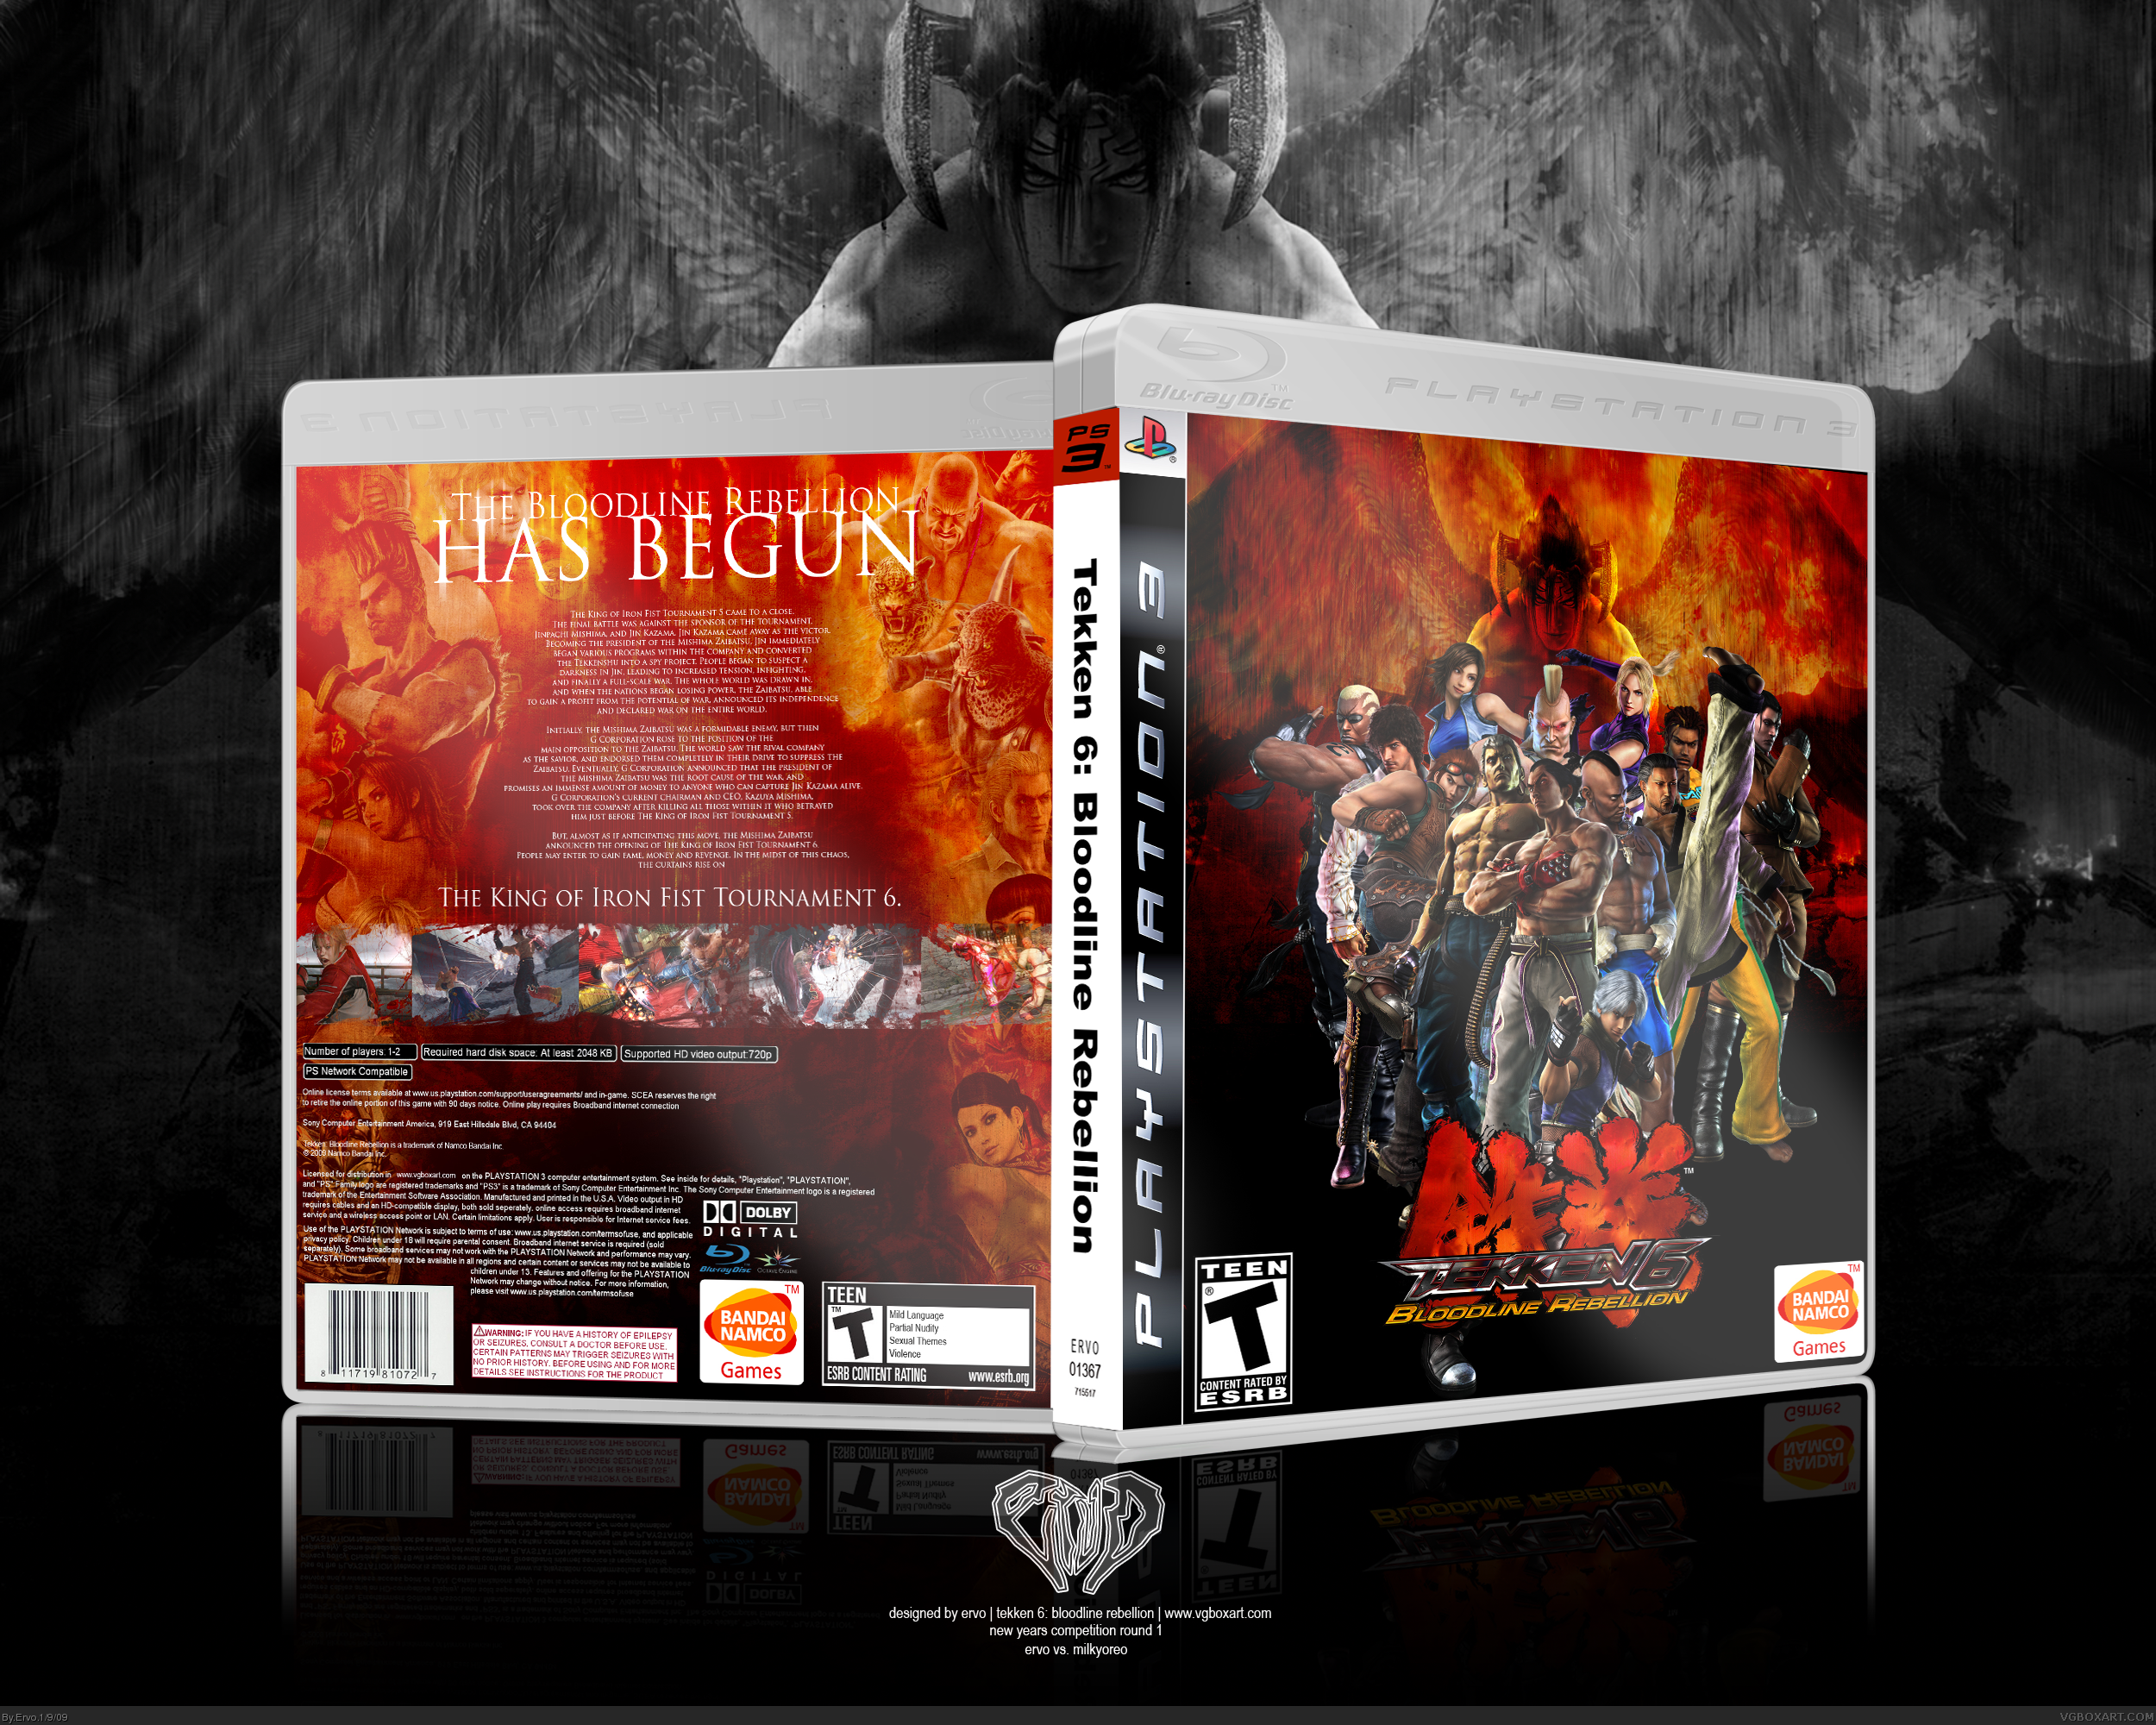 Tekken 6: Bloodline Rebellion box cover